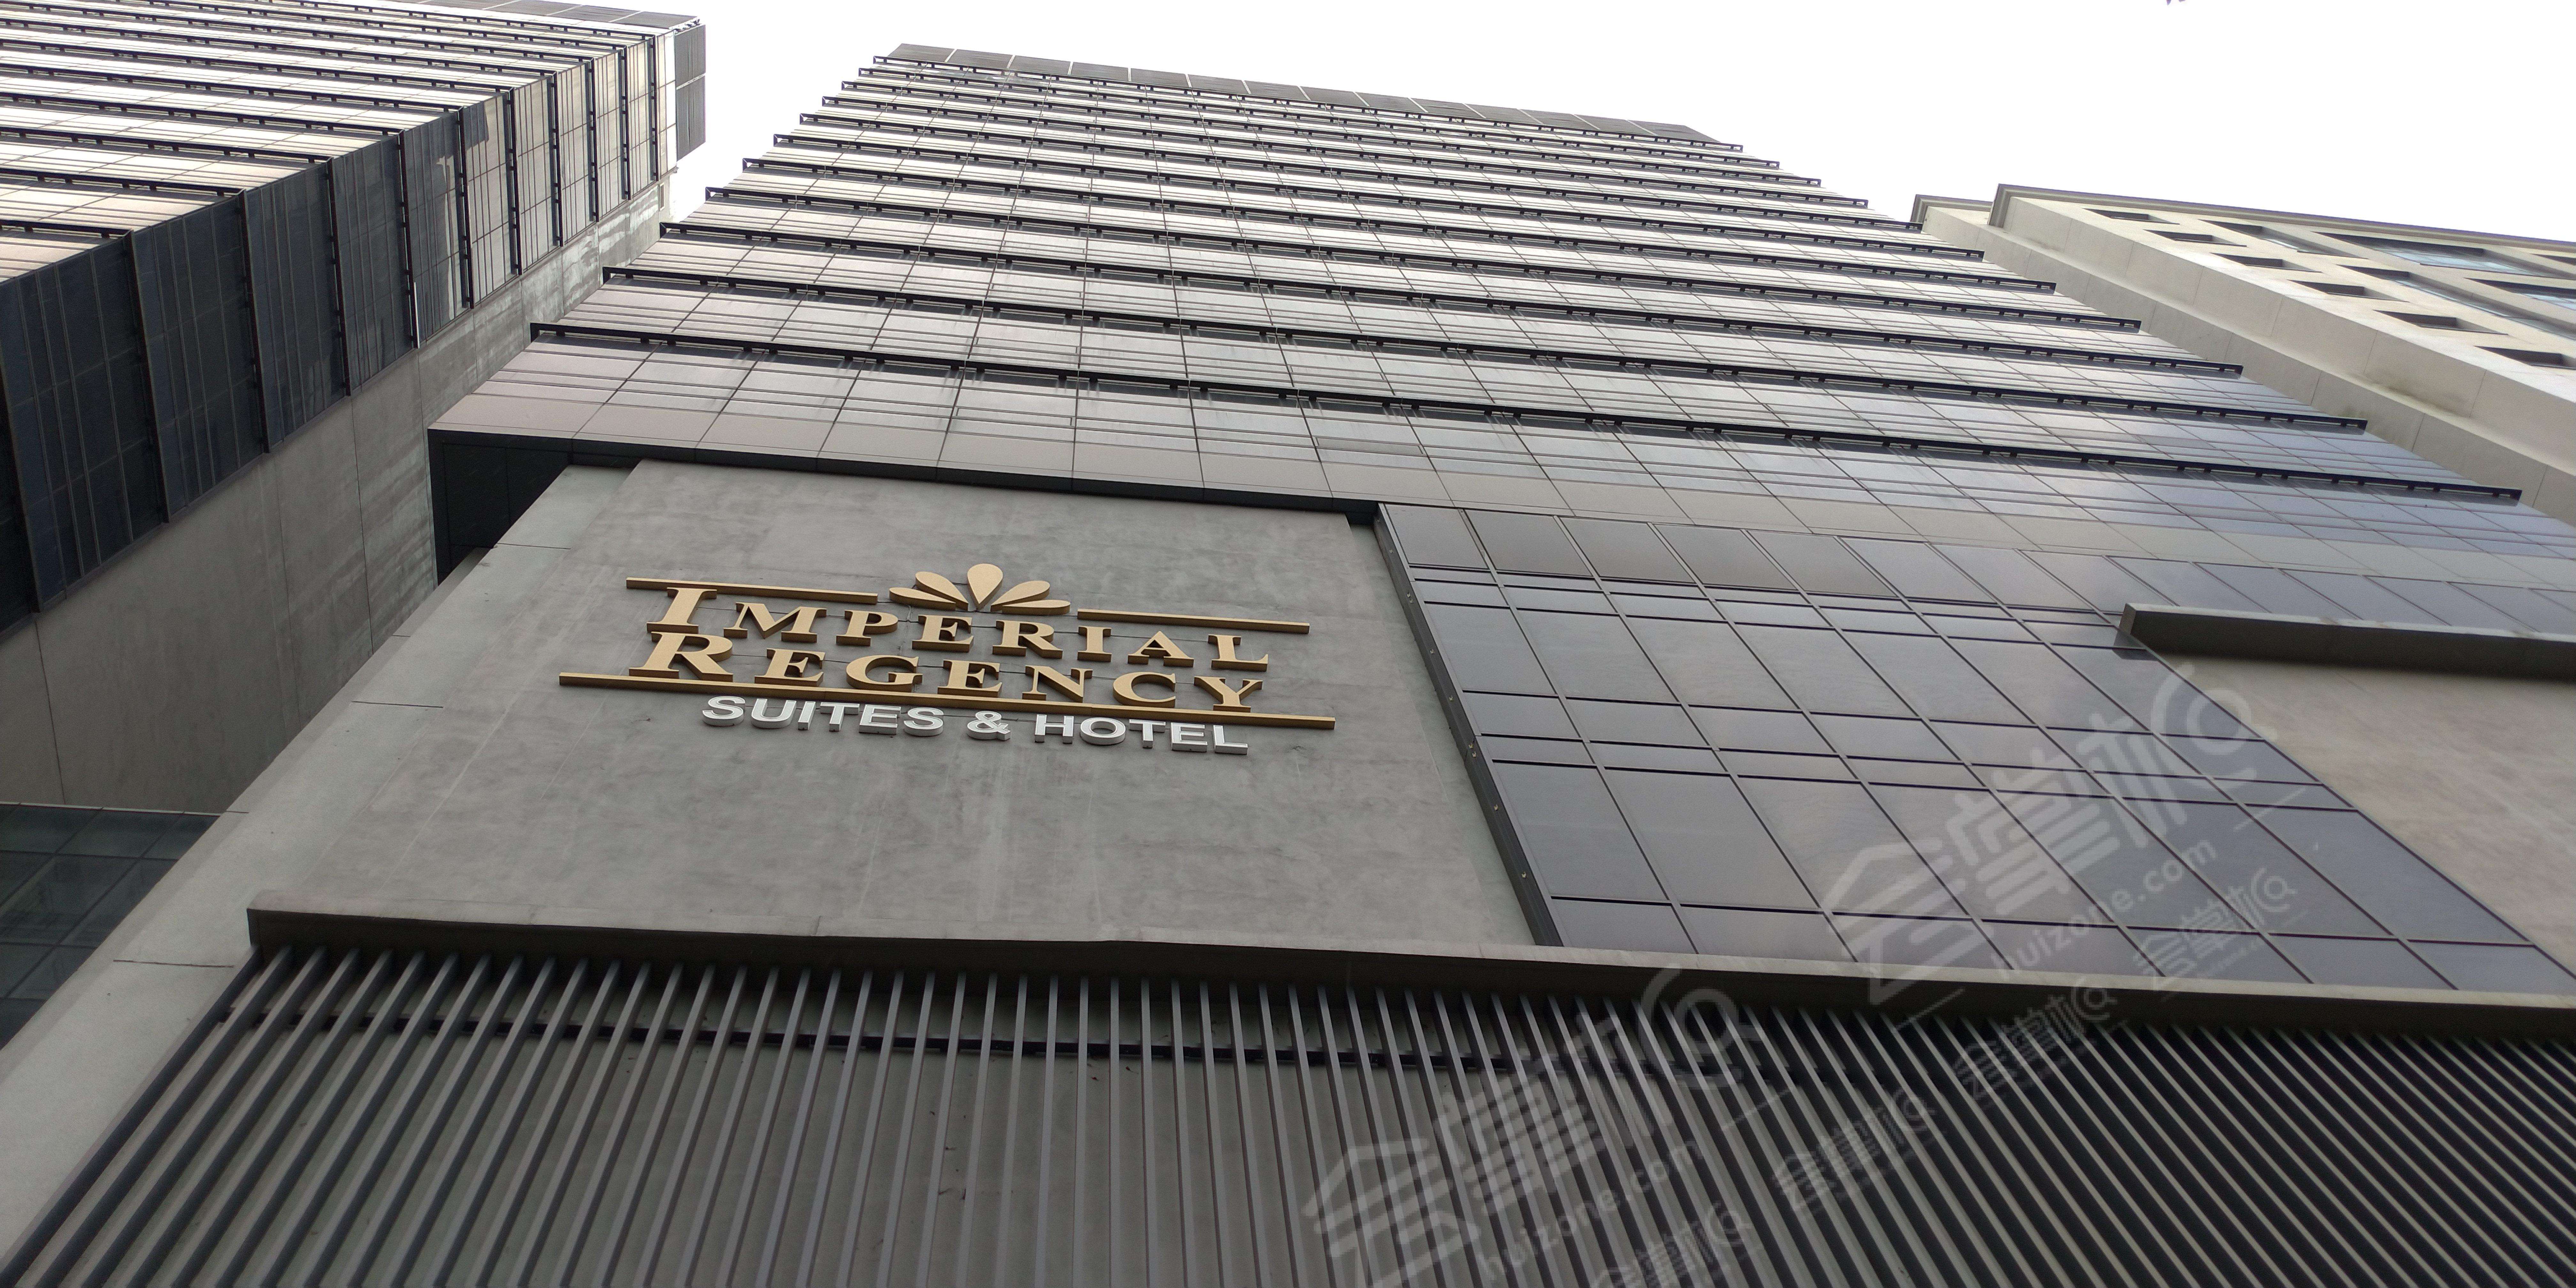 吉隆坡四星级酒店最大容纳200人的会议场地|吉隆坡帝国丽晶套房酒店(Imperial Regency Suites & Hotel Kuala Lumpur)的价格与联系方式